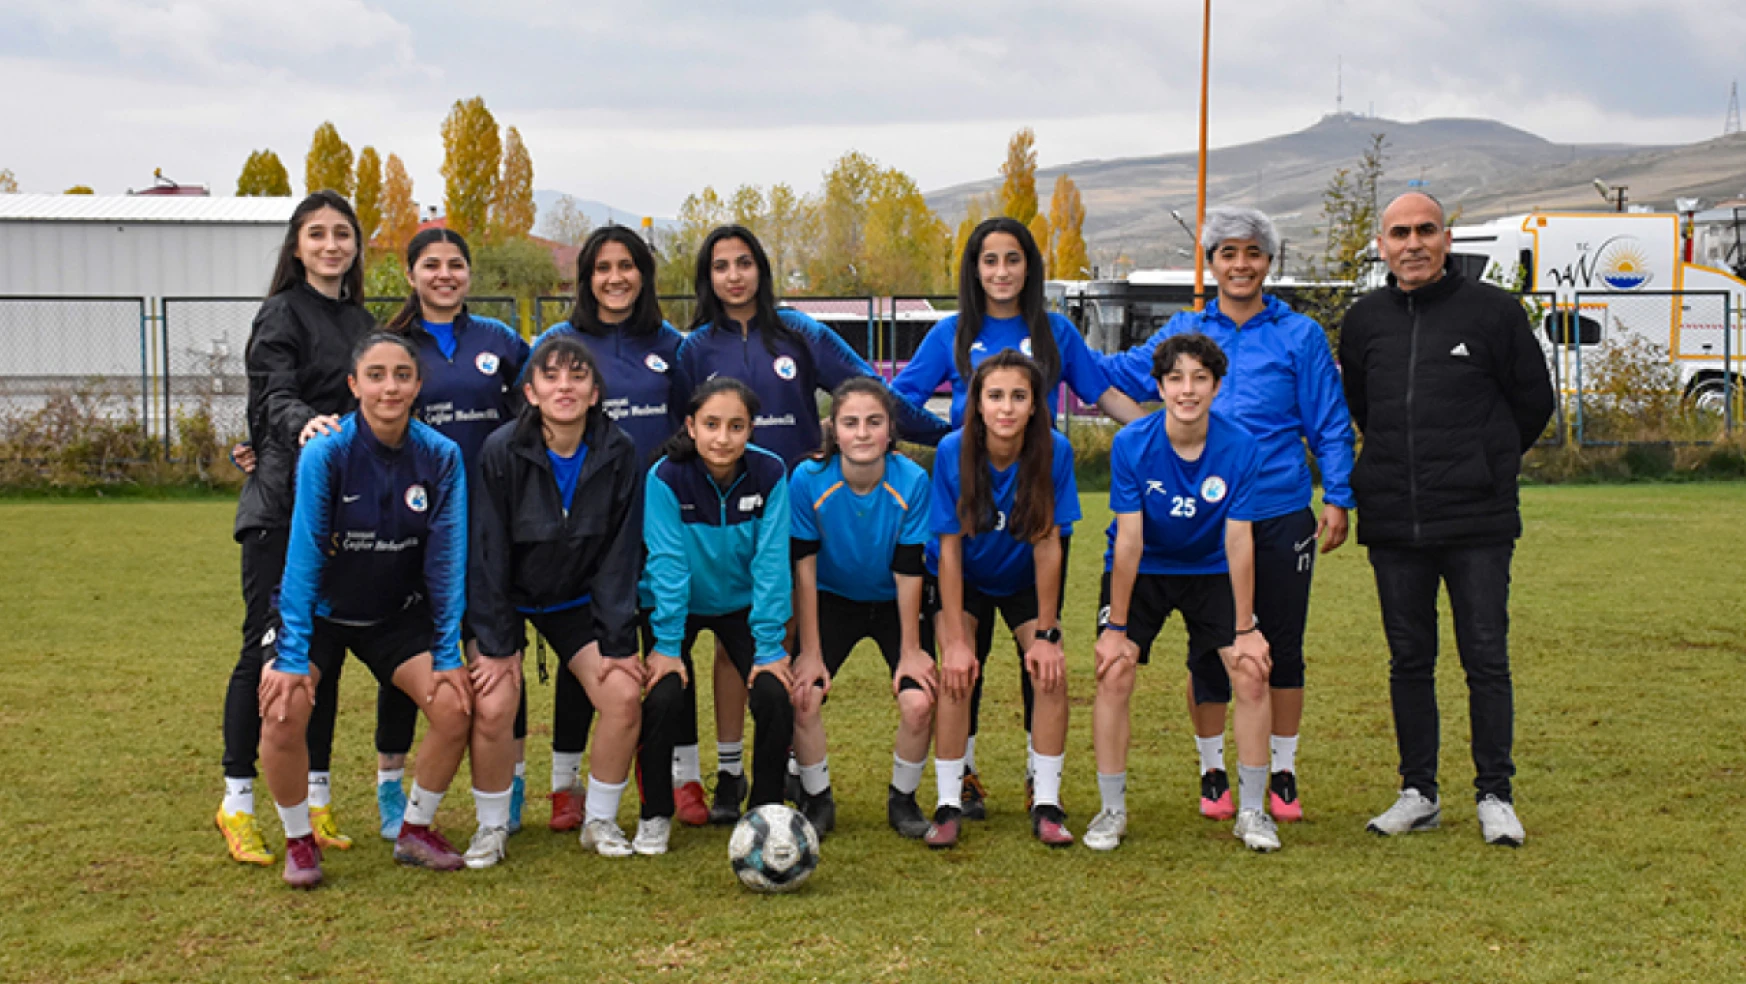 Vangücü kadın futbol takımı 1. Lig'e göz dikti